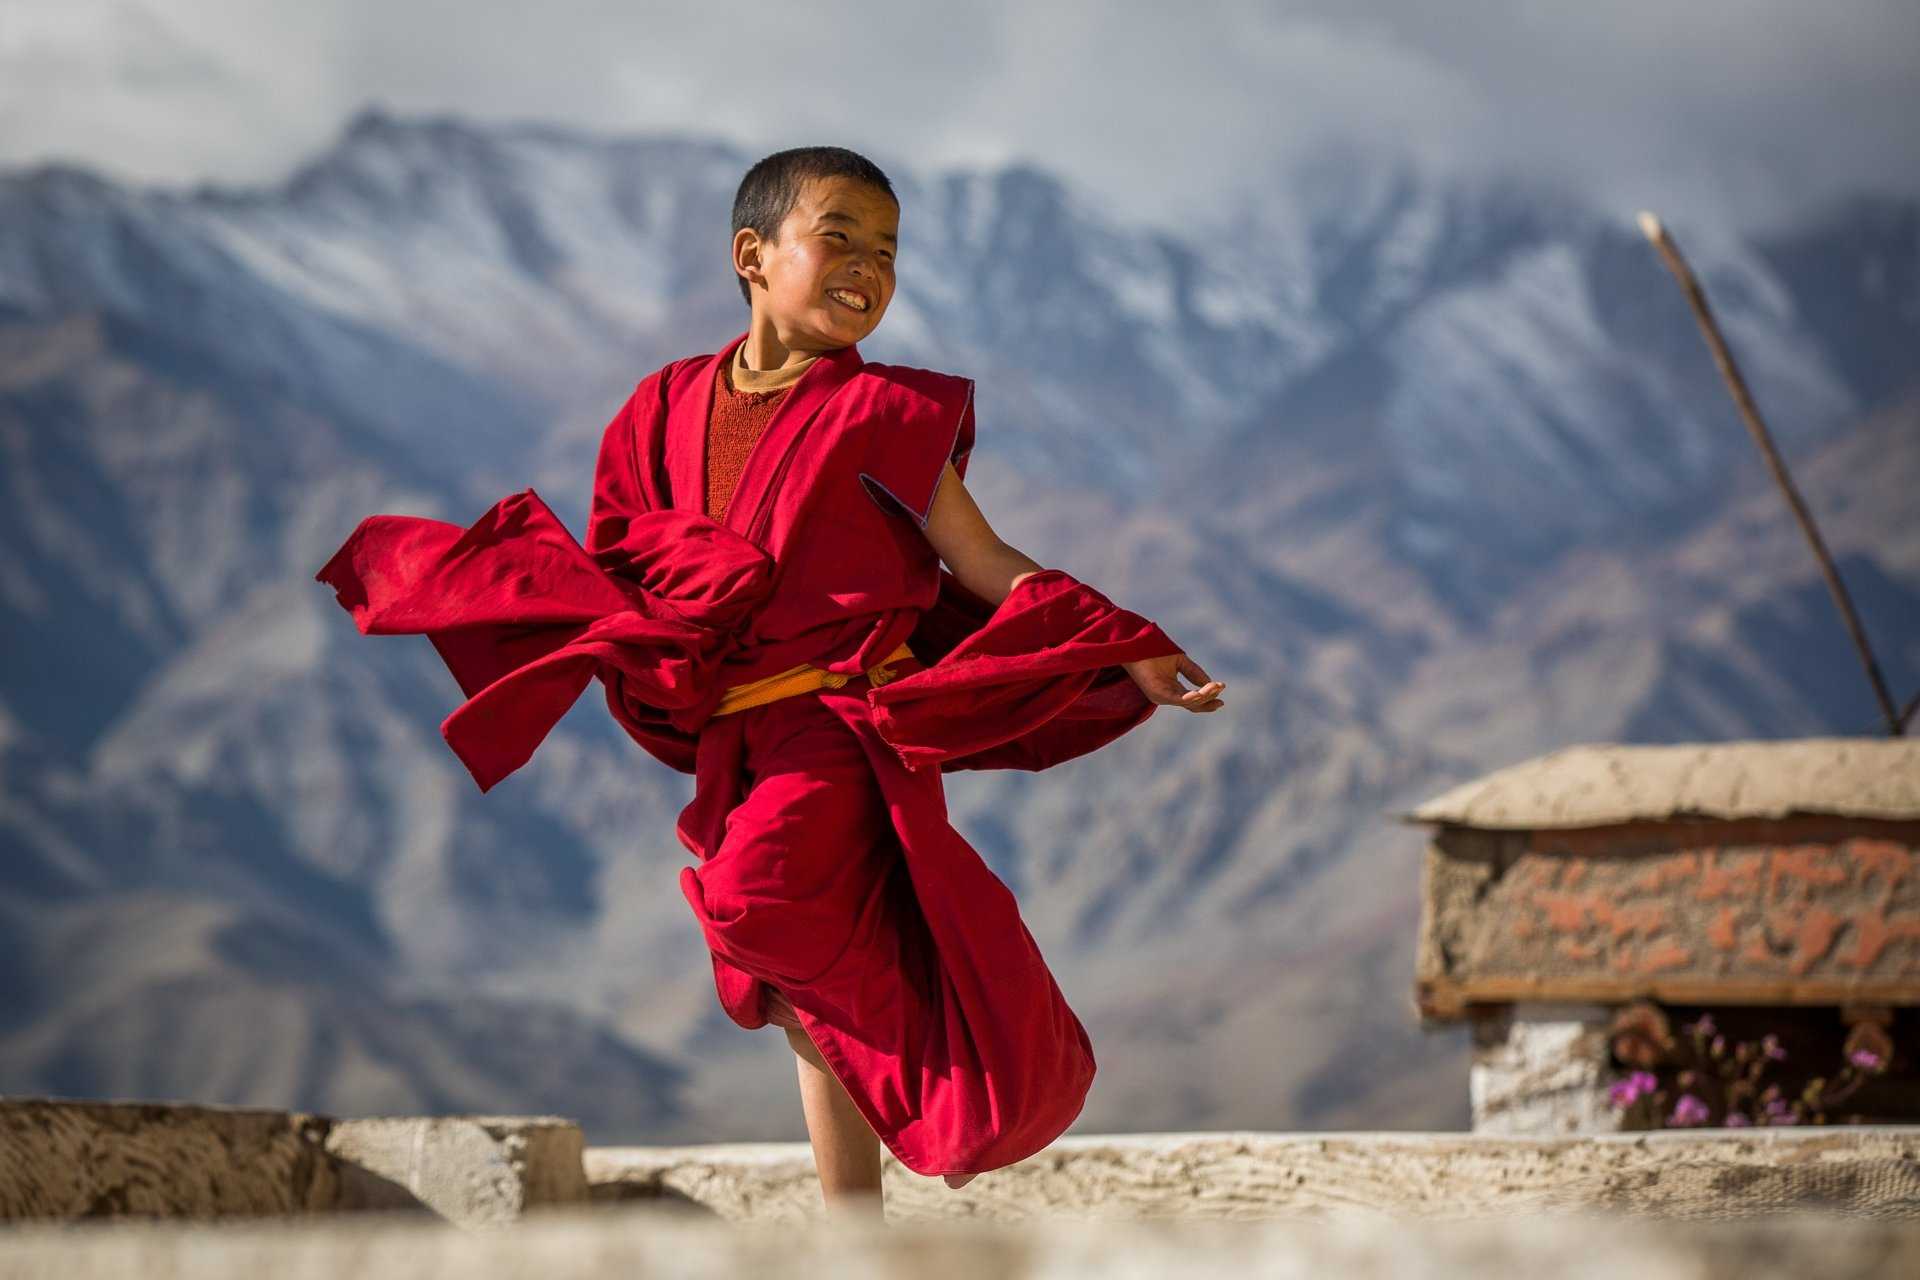 Монахи тибета и их способности - правда или выдумка?